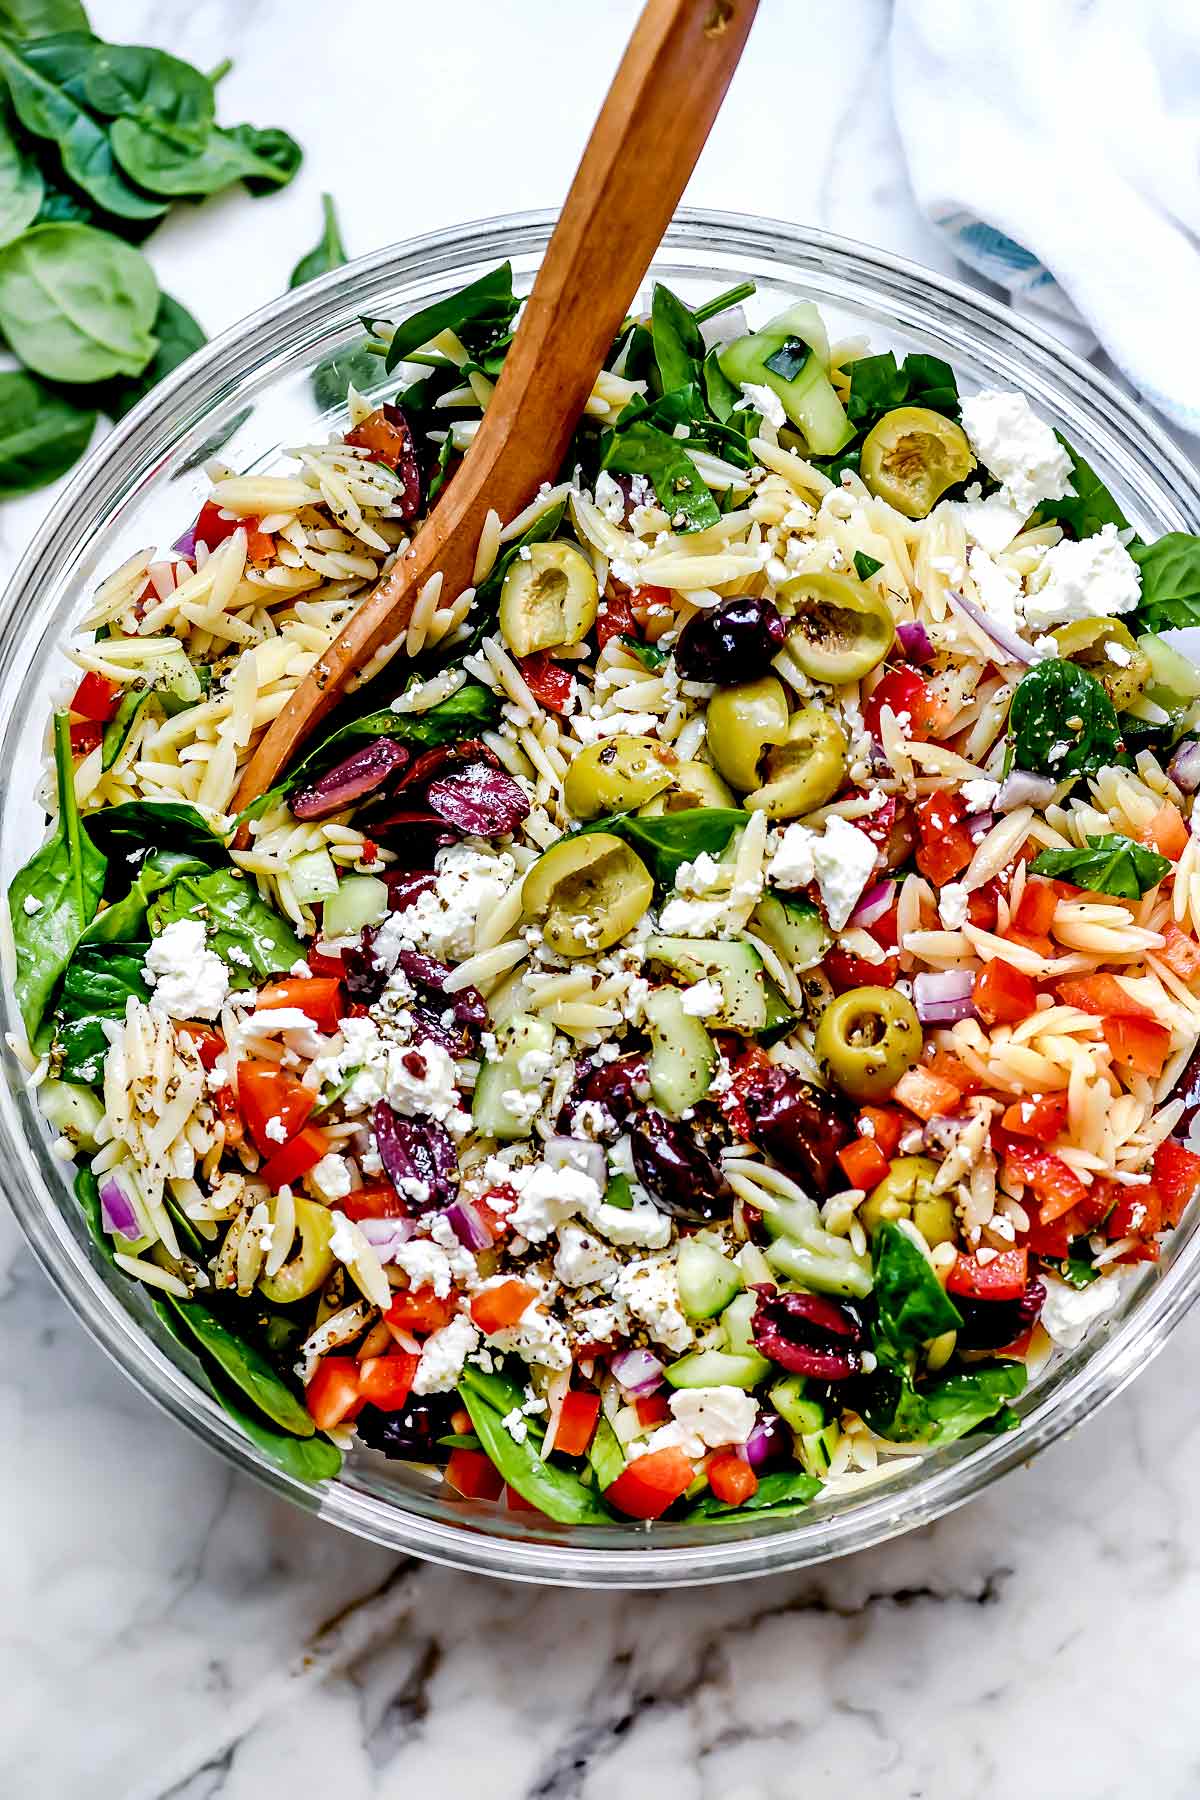 Salade méditerranéenne d'orzo foodiecrush.com #salade #orzo #olives #méditerranéenne #pasta #pastasalad #santé #recettes